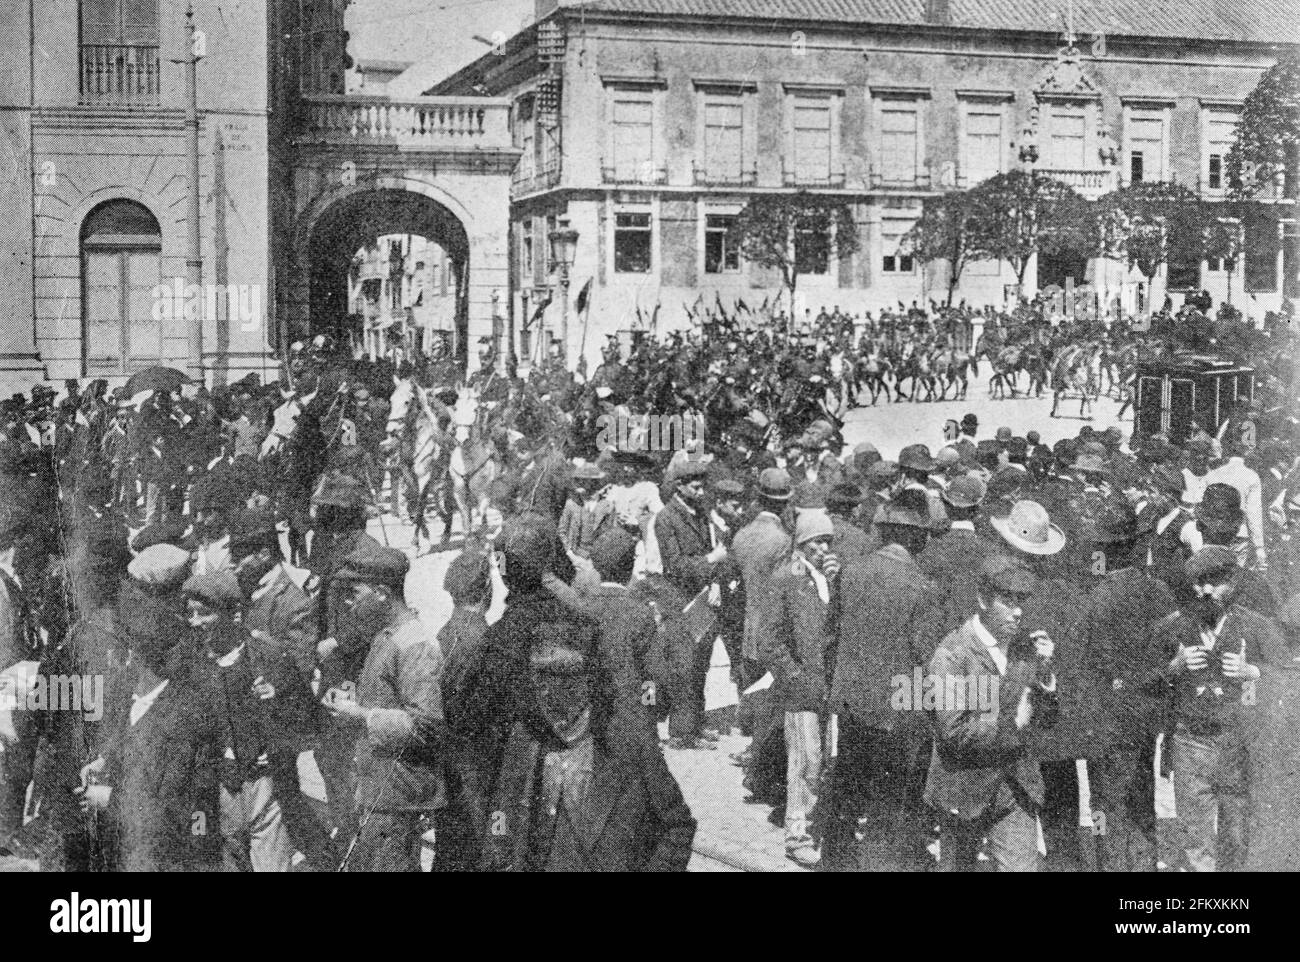 Patrouille von Lancers, Lissabon - Foto zeigt das Nationaltheater Doña Maria II, das sich am Ende des Pedro IV Platzes (Praca de Dom Pedro IV) befindet, auch Rossio Platz genannt. Foto, das möglicherweise während der republikanischen Revolution vom 5. Oktober 1910 aufgenommen wurde Stockfoto